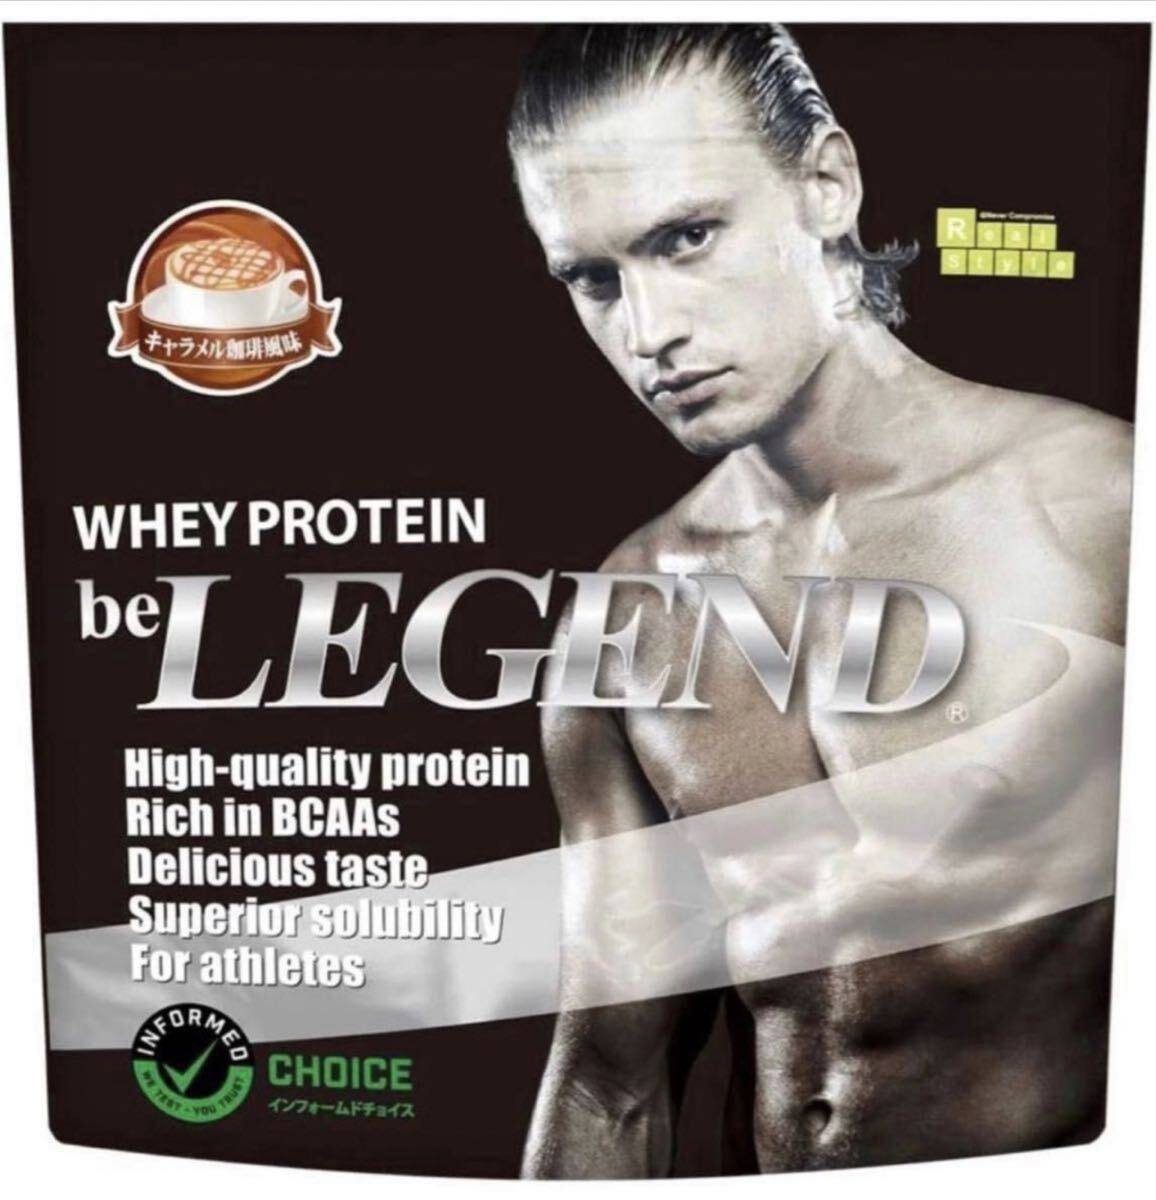 [ карамель .. способ тест ] Be Legend cывороточный протеин карамель .. способ тест карамель кофе WPC витамин 700 грамм 